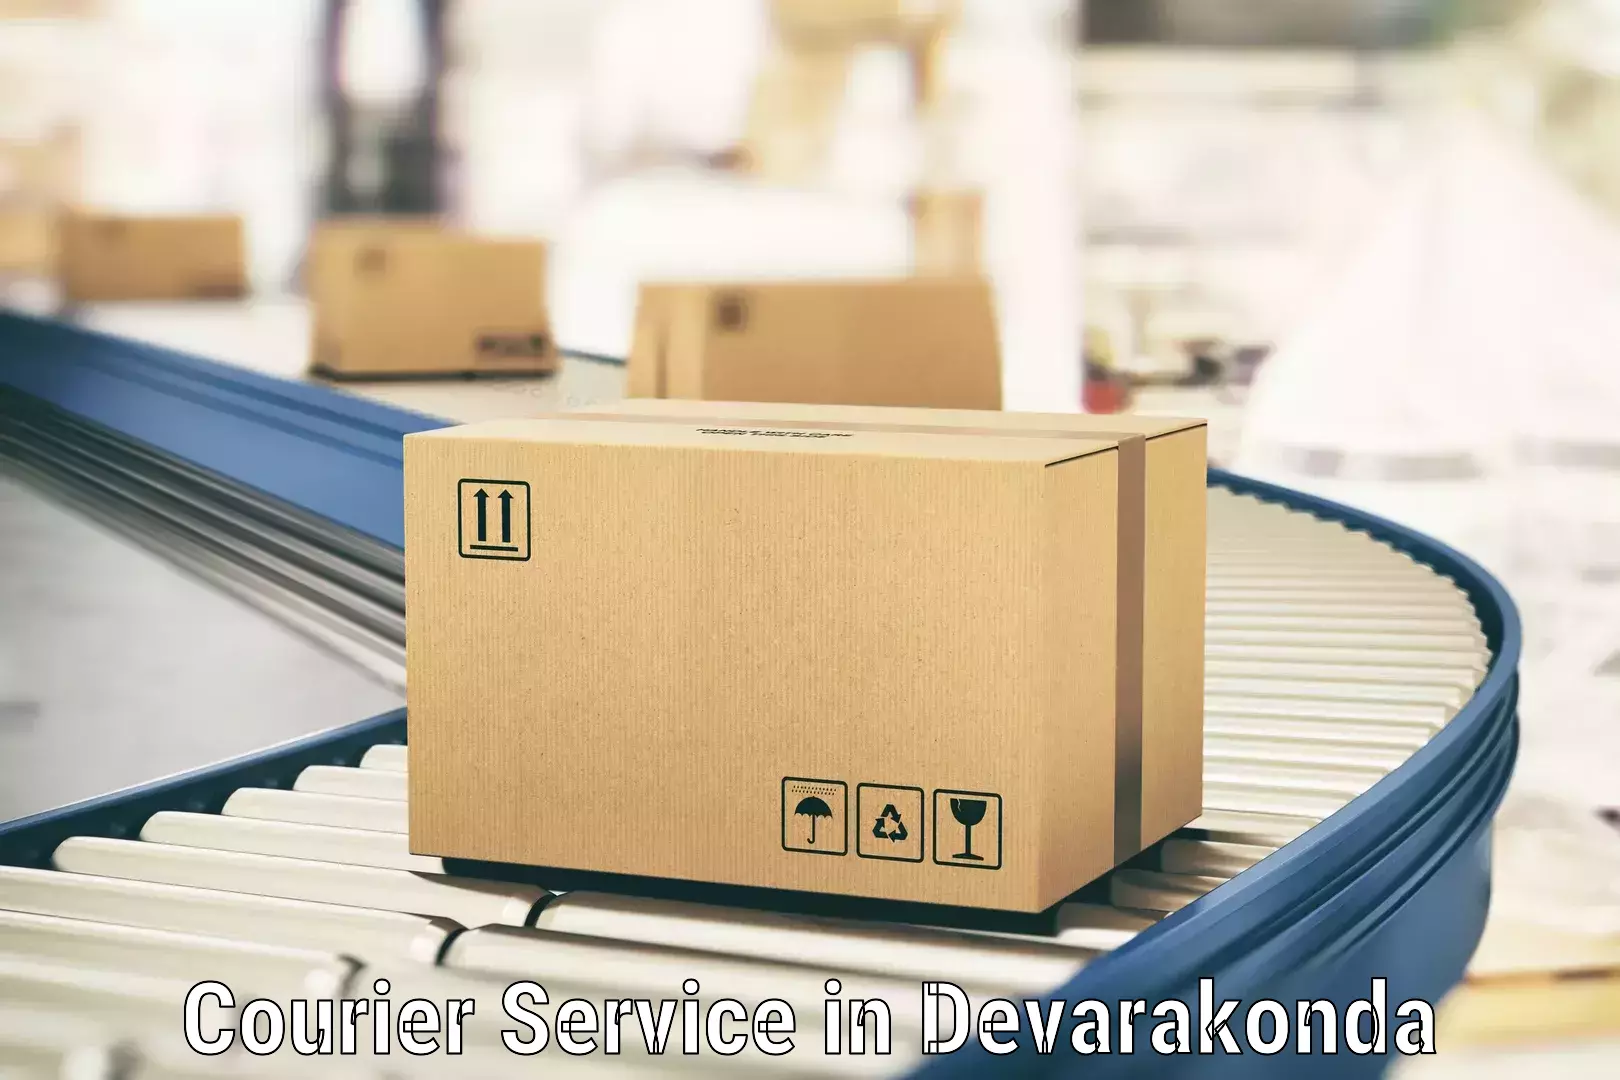 Fastest parcel delivery in Devarakonda